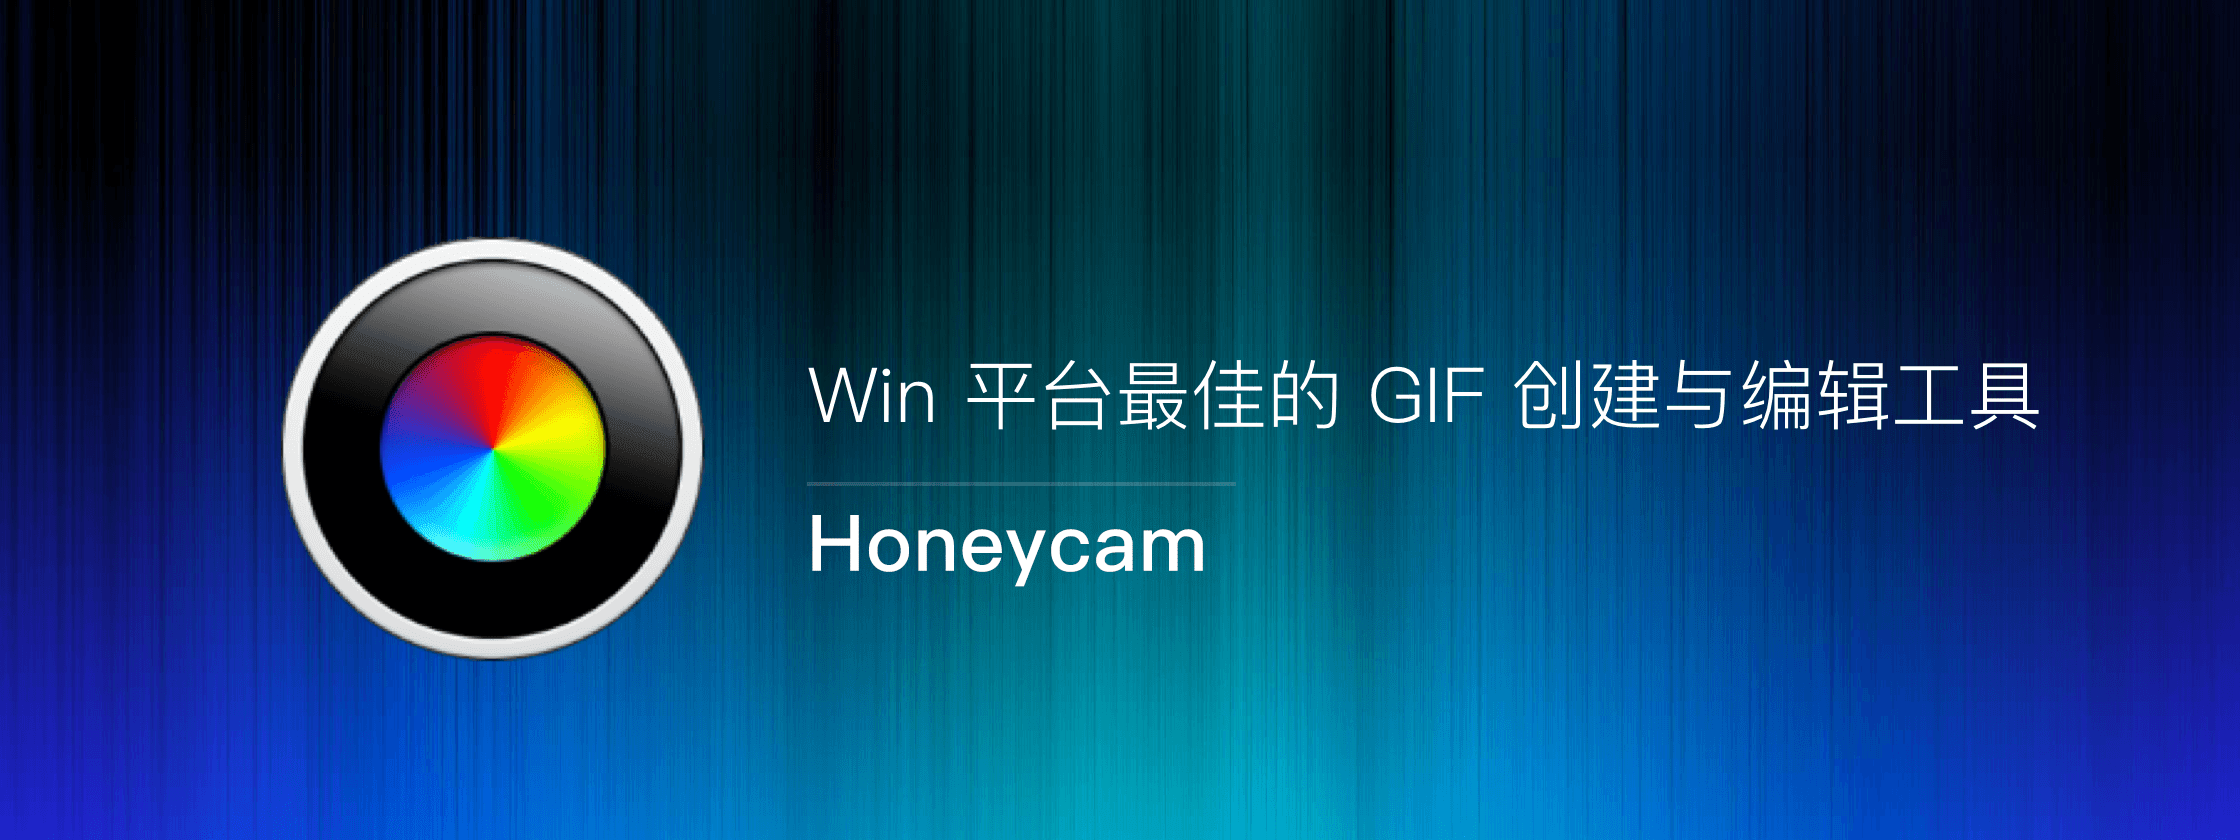 Honeycam – Win 平台最佳的 GIF 创建与编辑工具